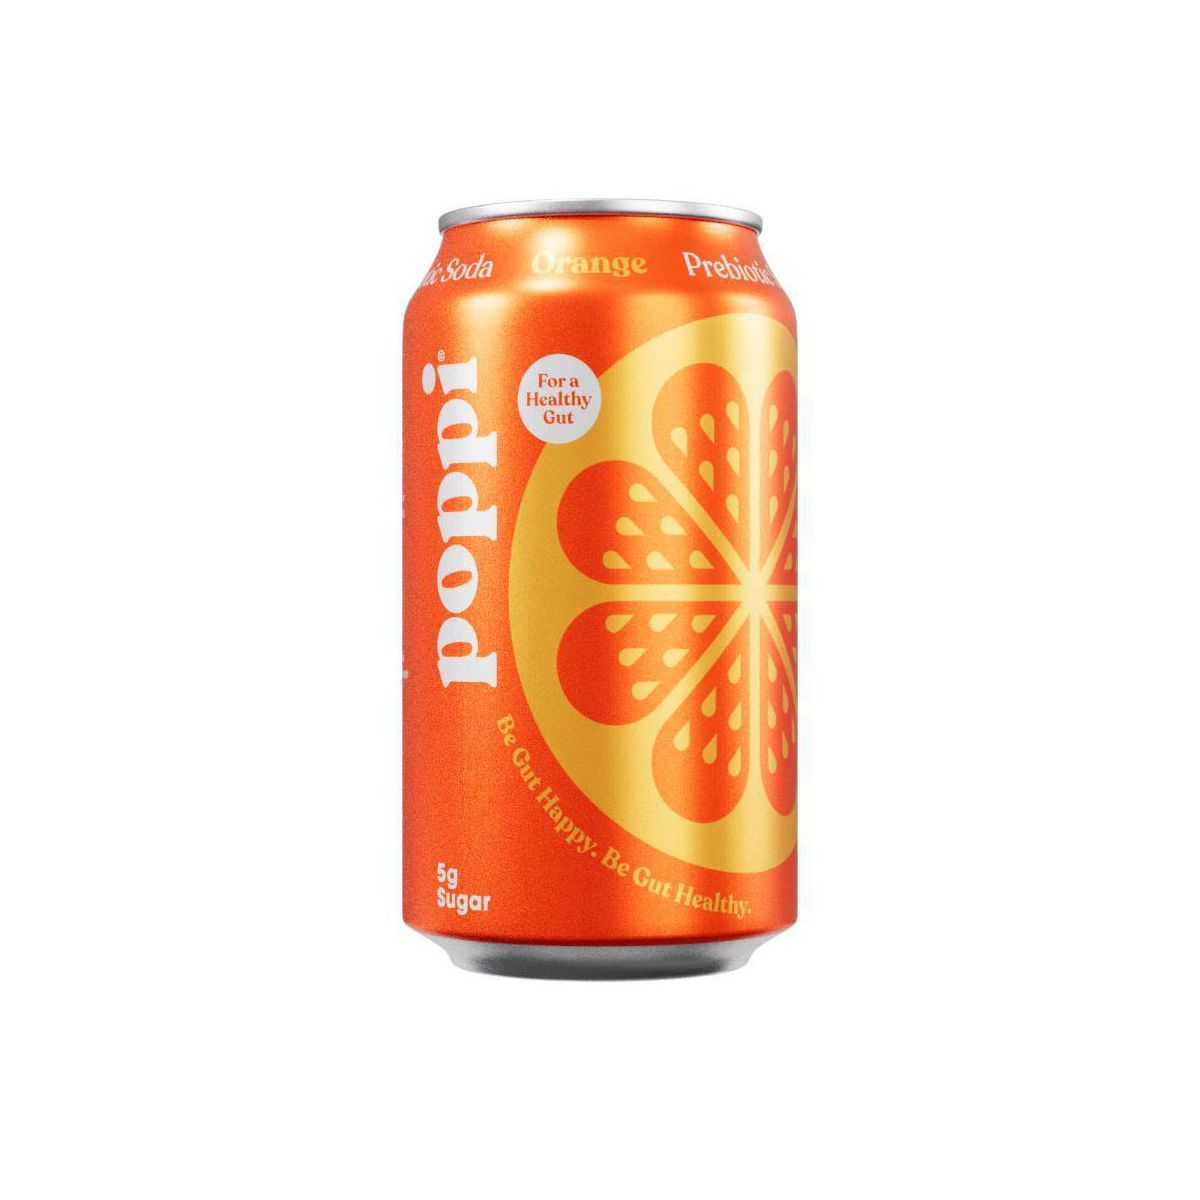 Poppi Orange Prebiotic Soda - 12 fl oz Can | Target